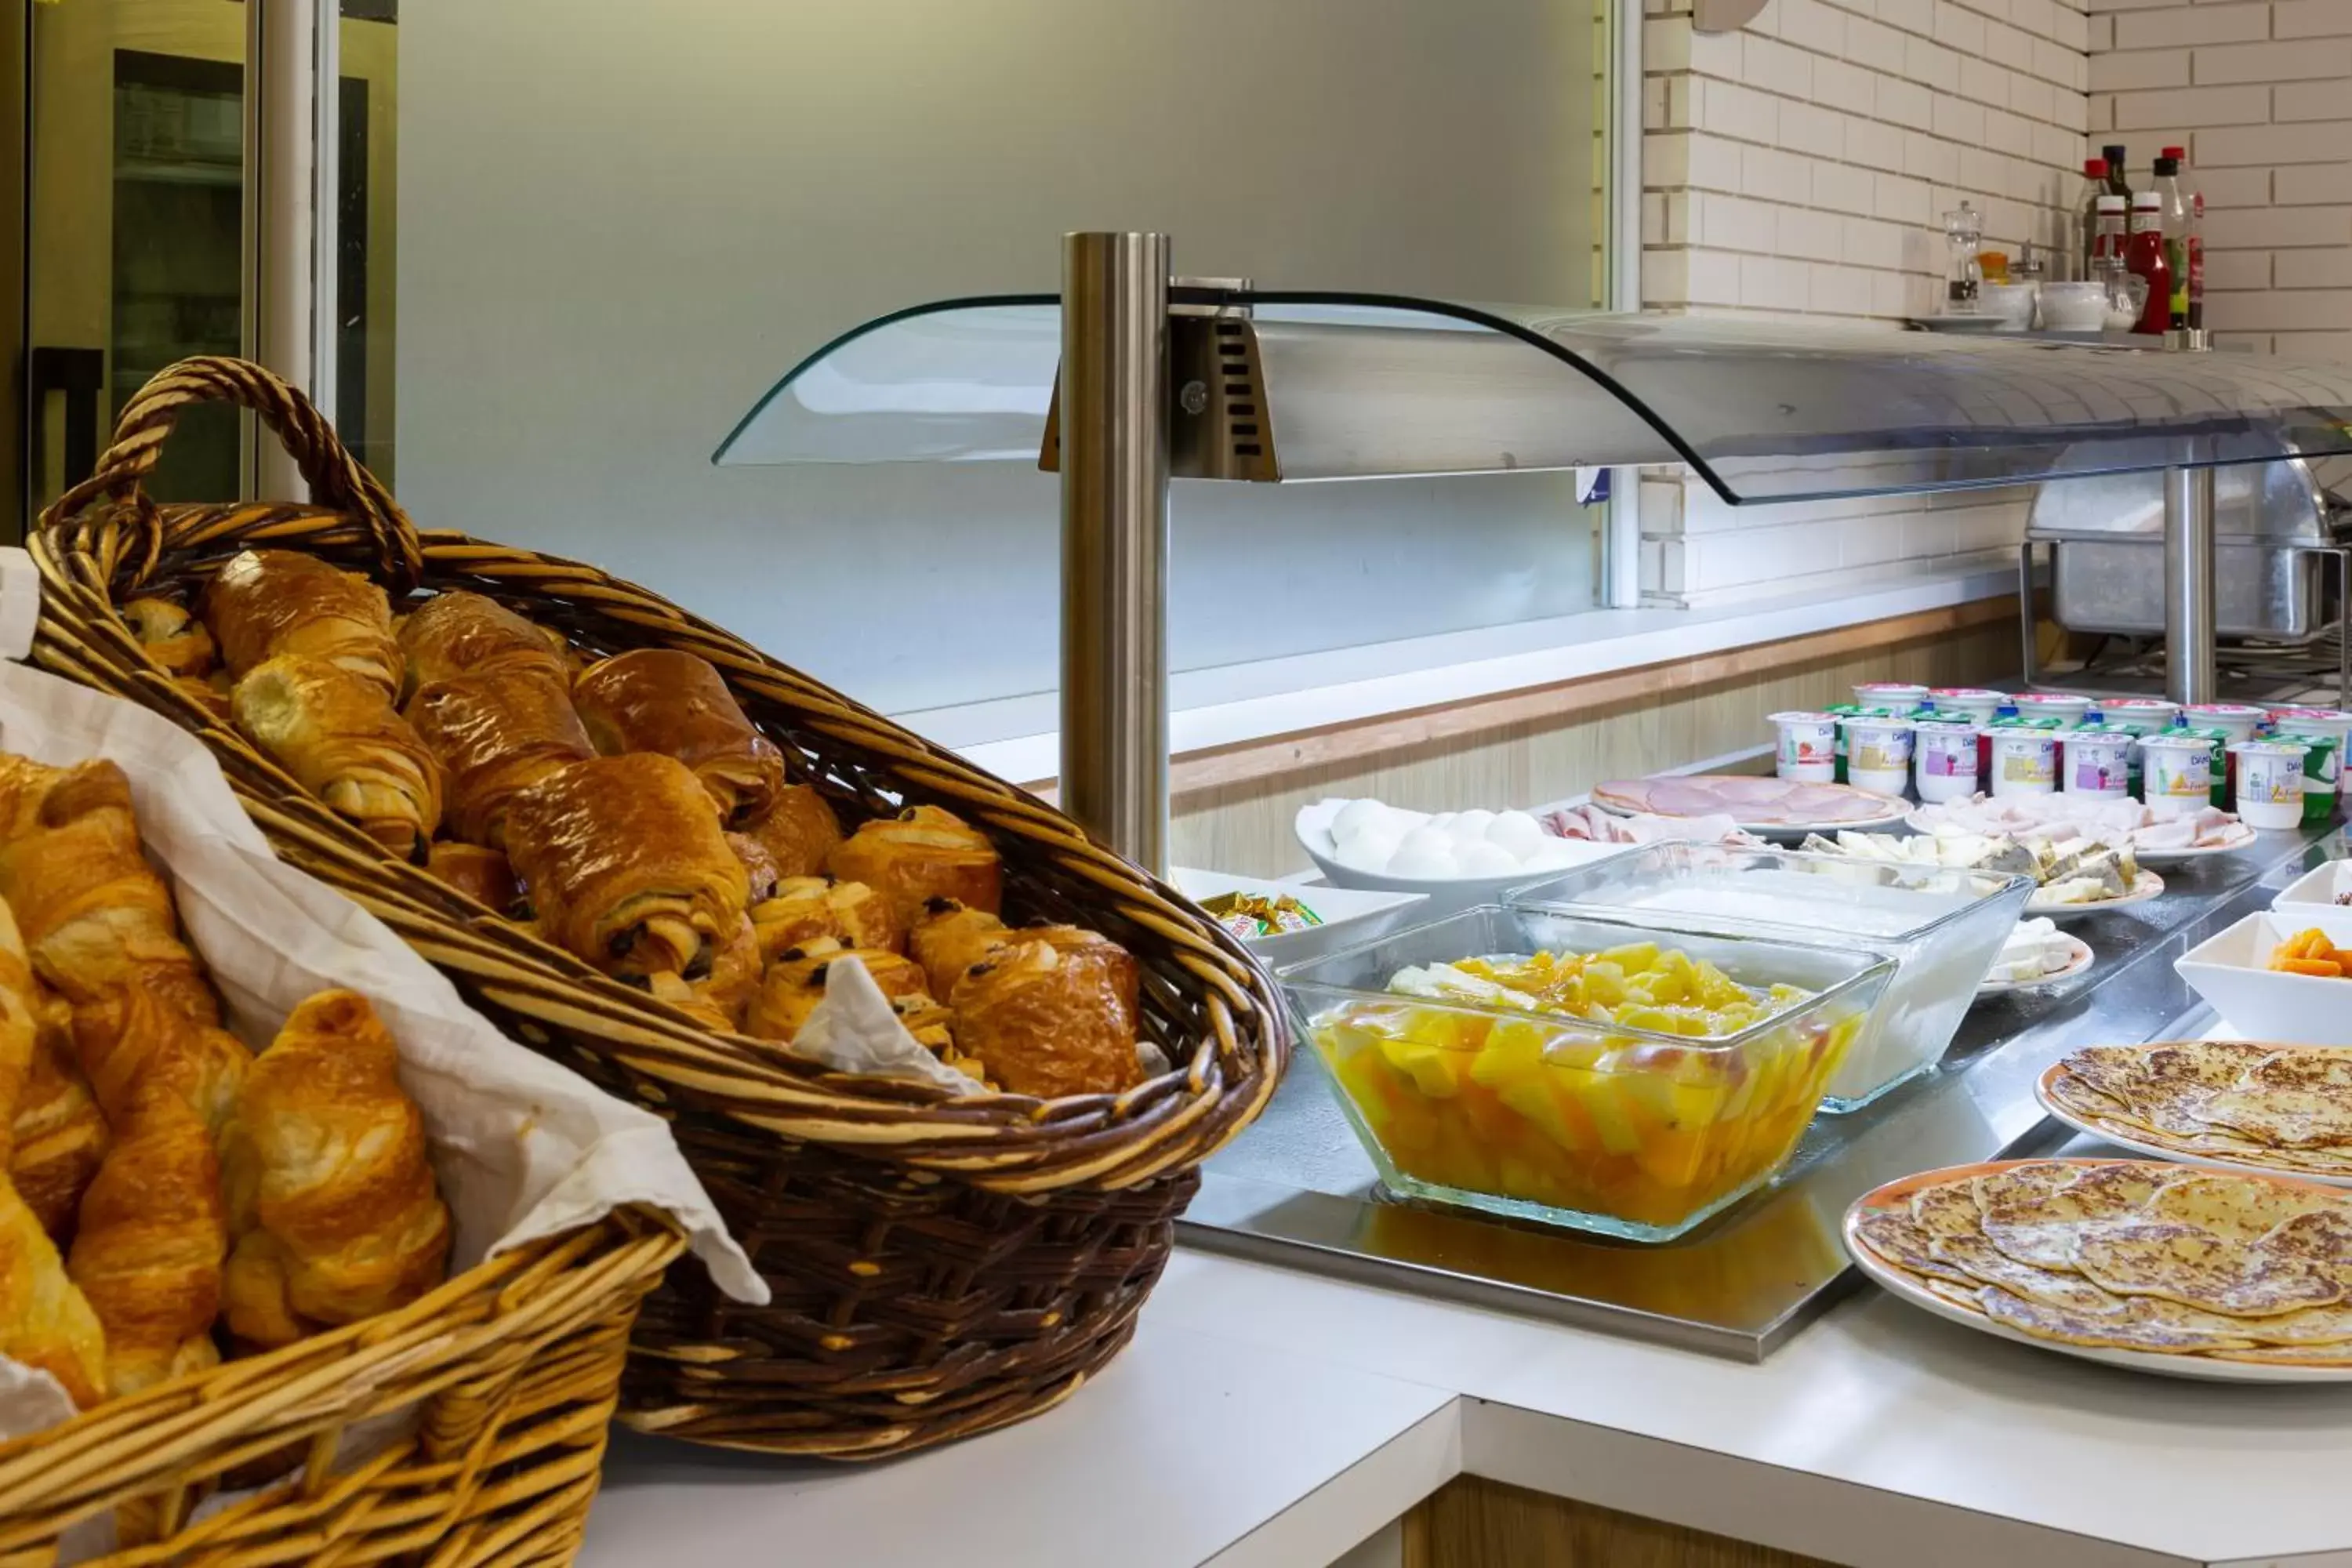 Buffet breakfast in Comfort Hotel Aeroport Lyon St Exupery